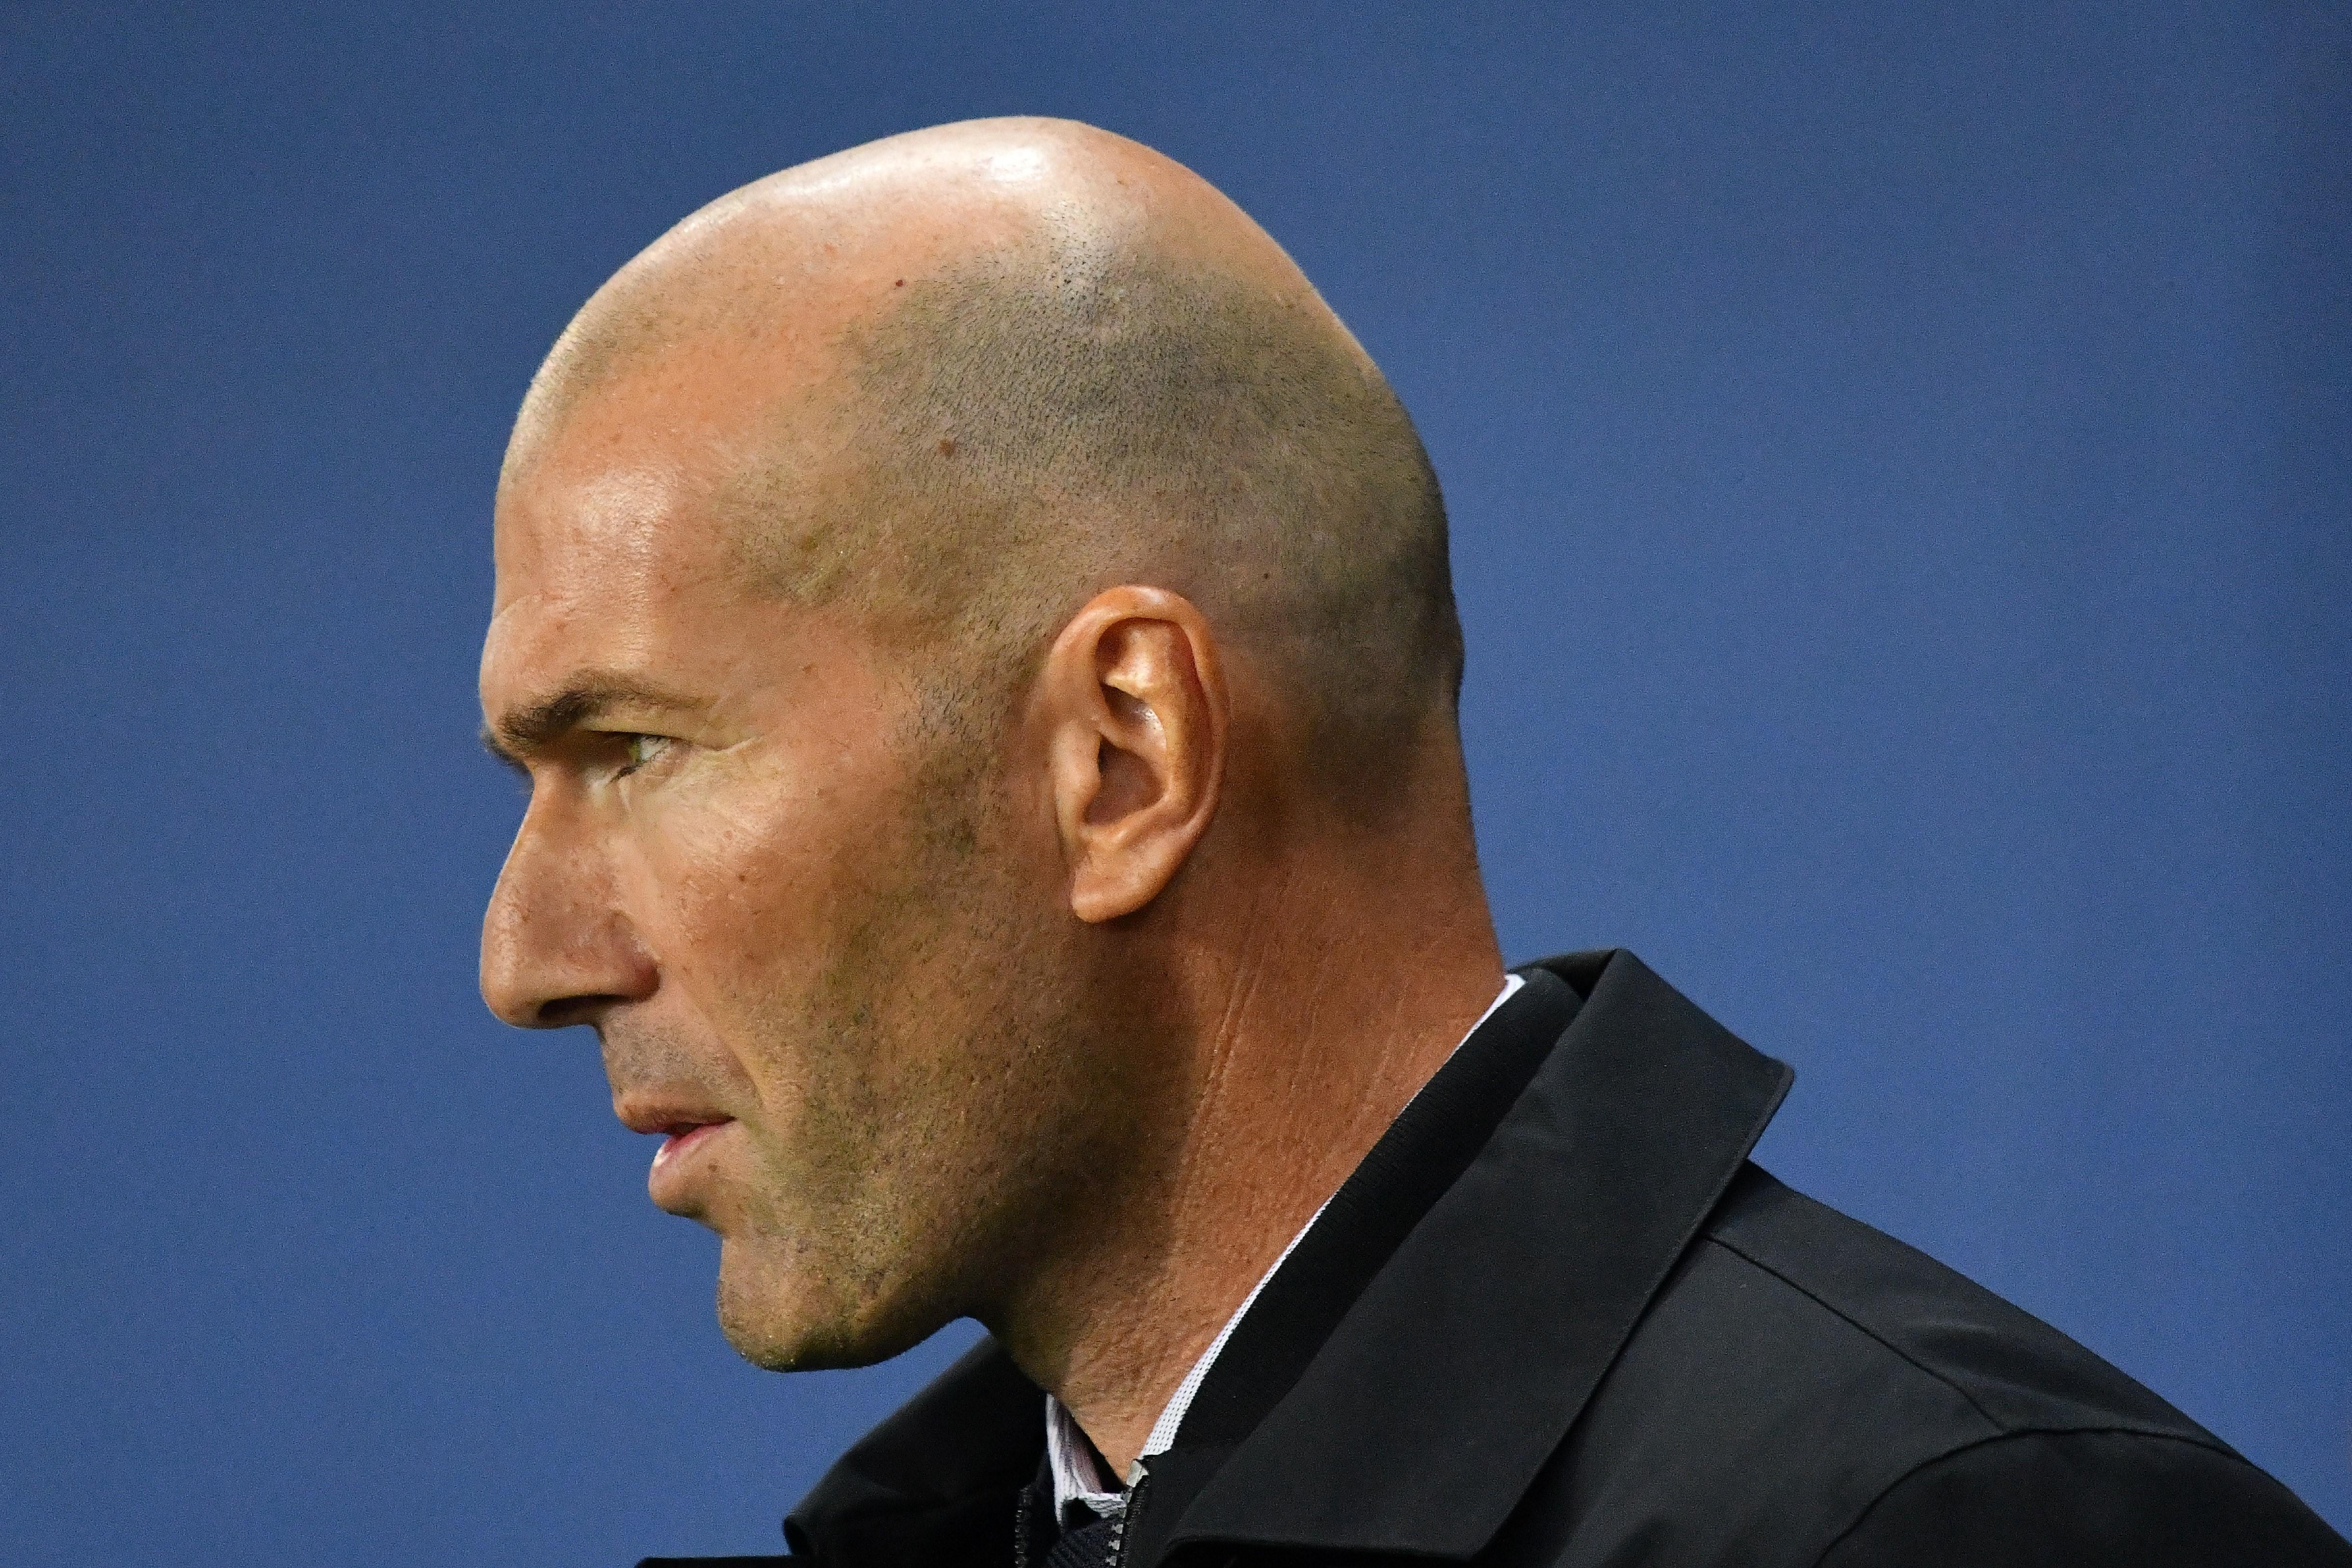 El entrenador del Real Madrid, Zinedine Zidane, durante el partido de Champions League ante el PSG en París. Europa Press.